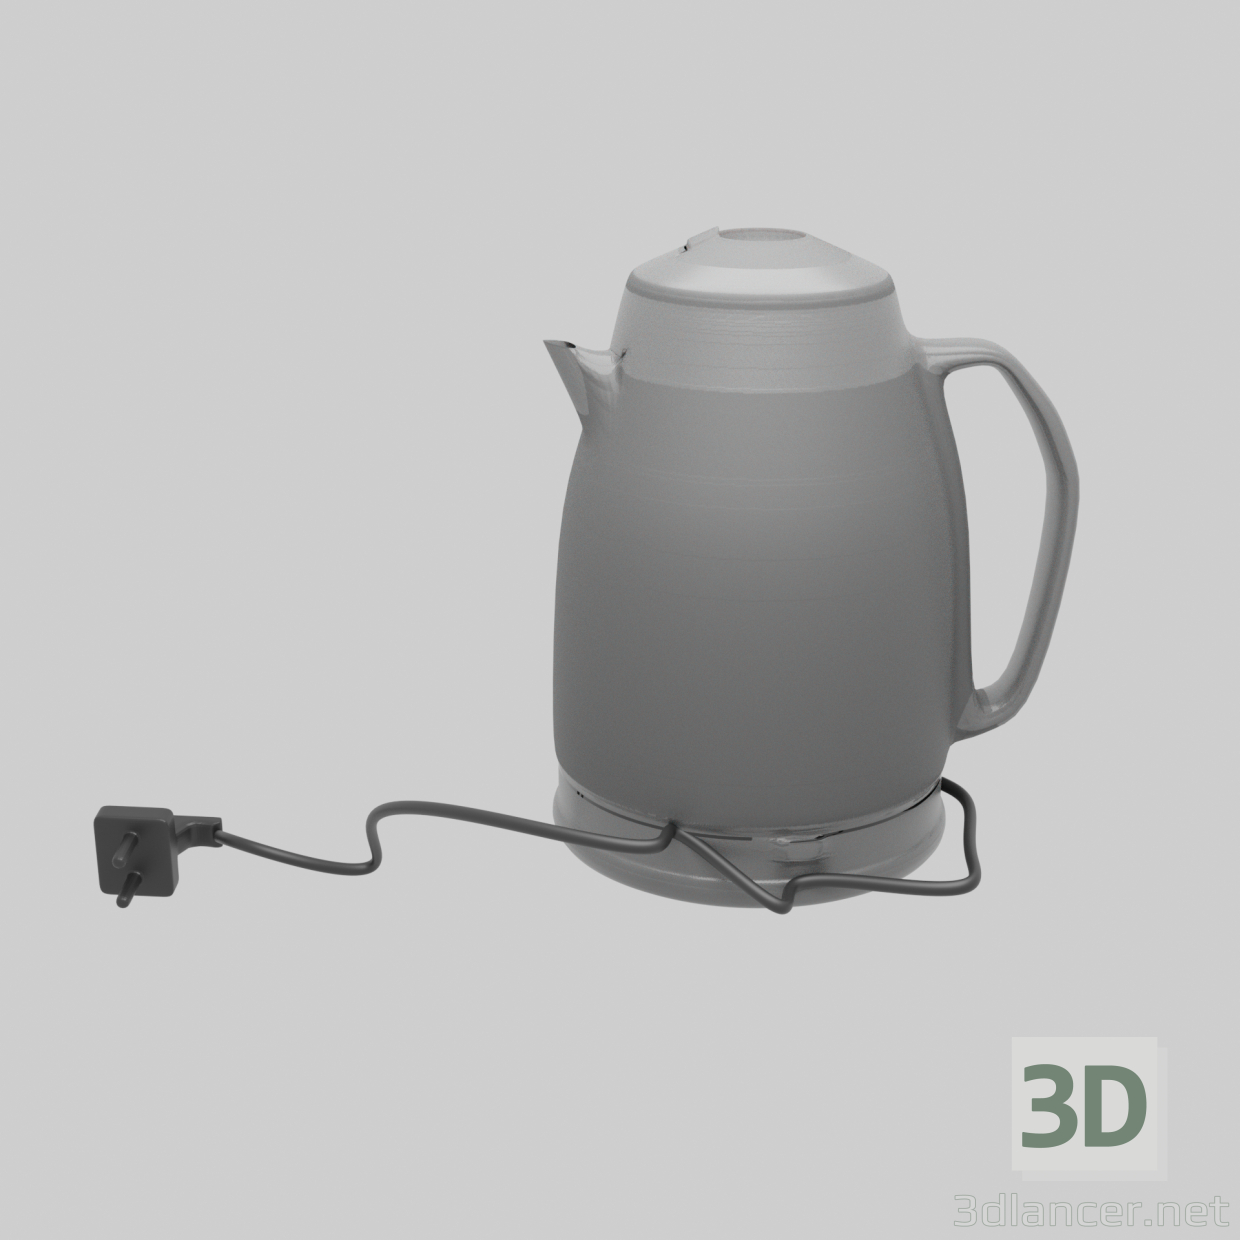 3D Su ısıtıcısı modeli satın - render